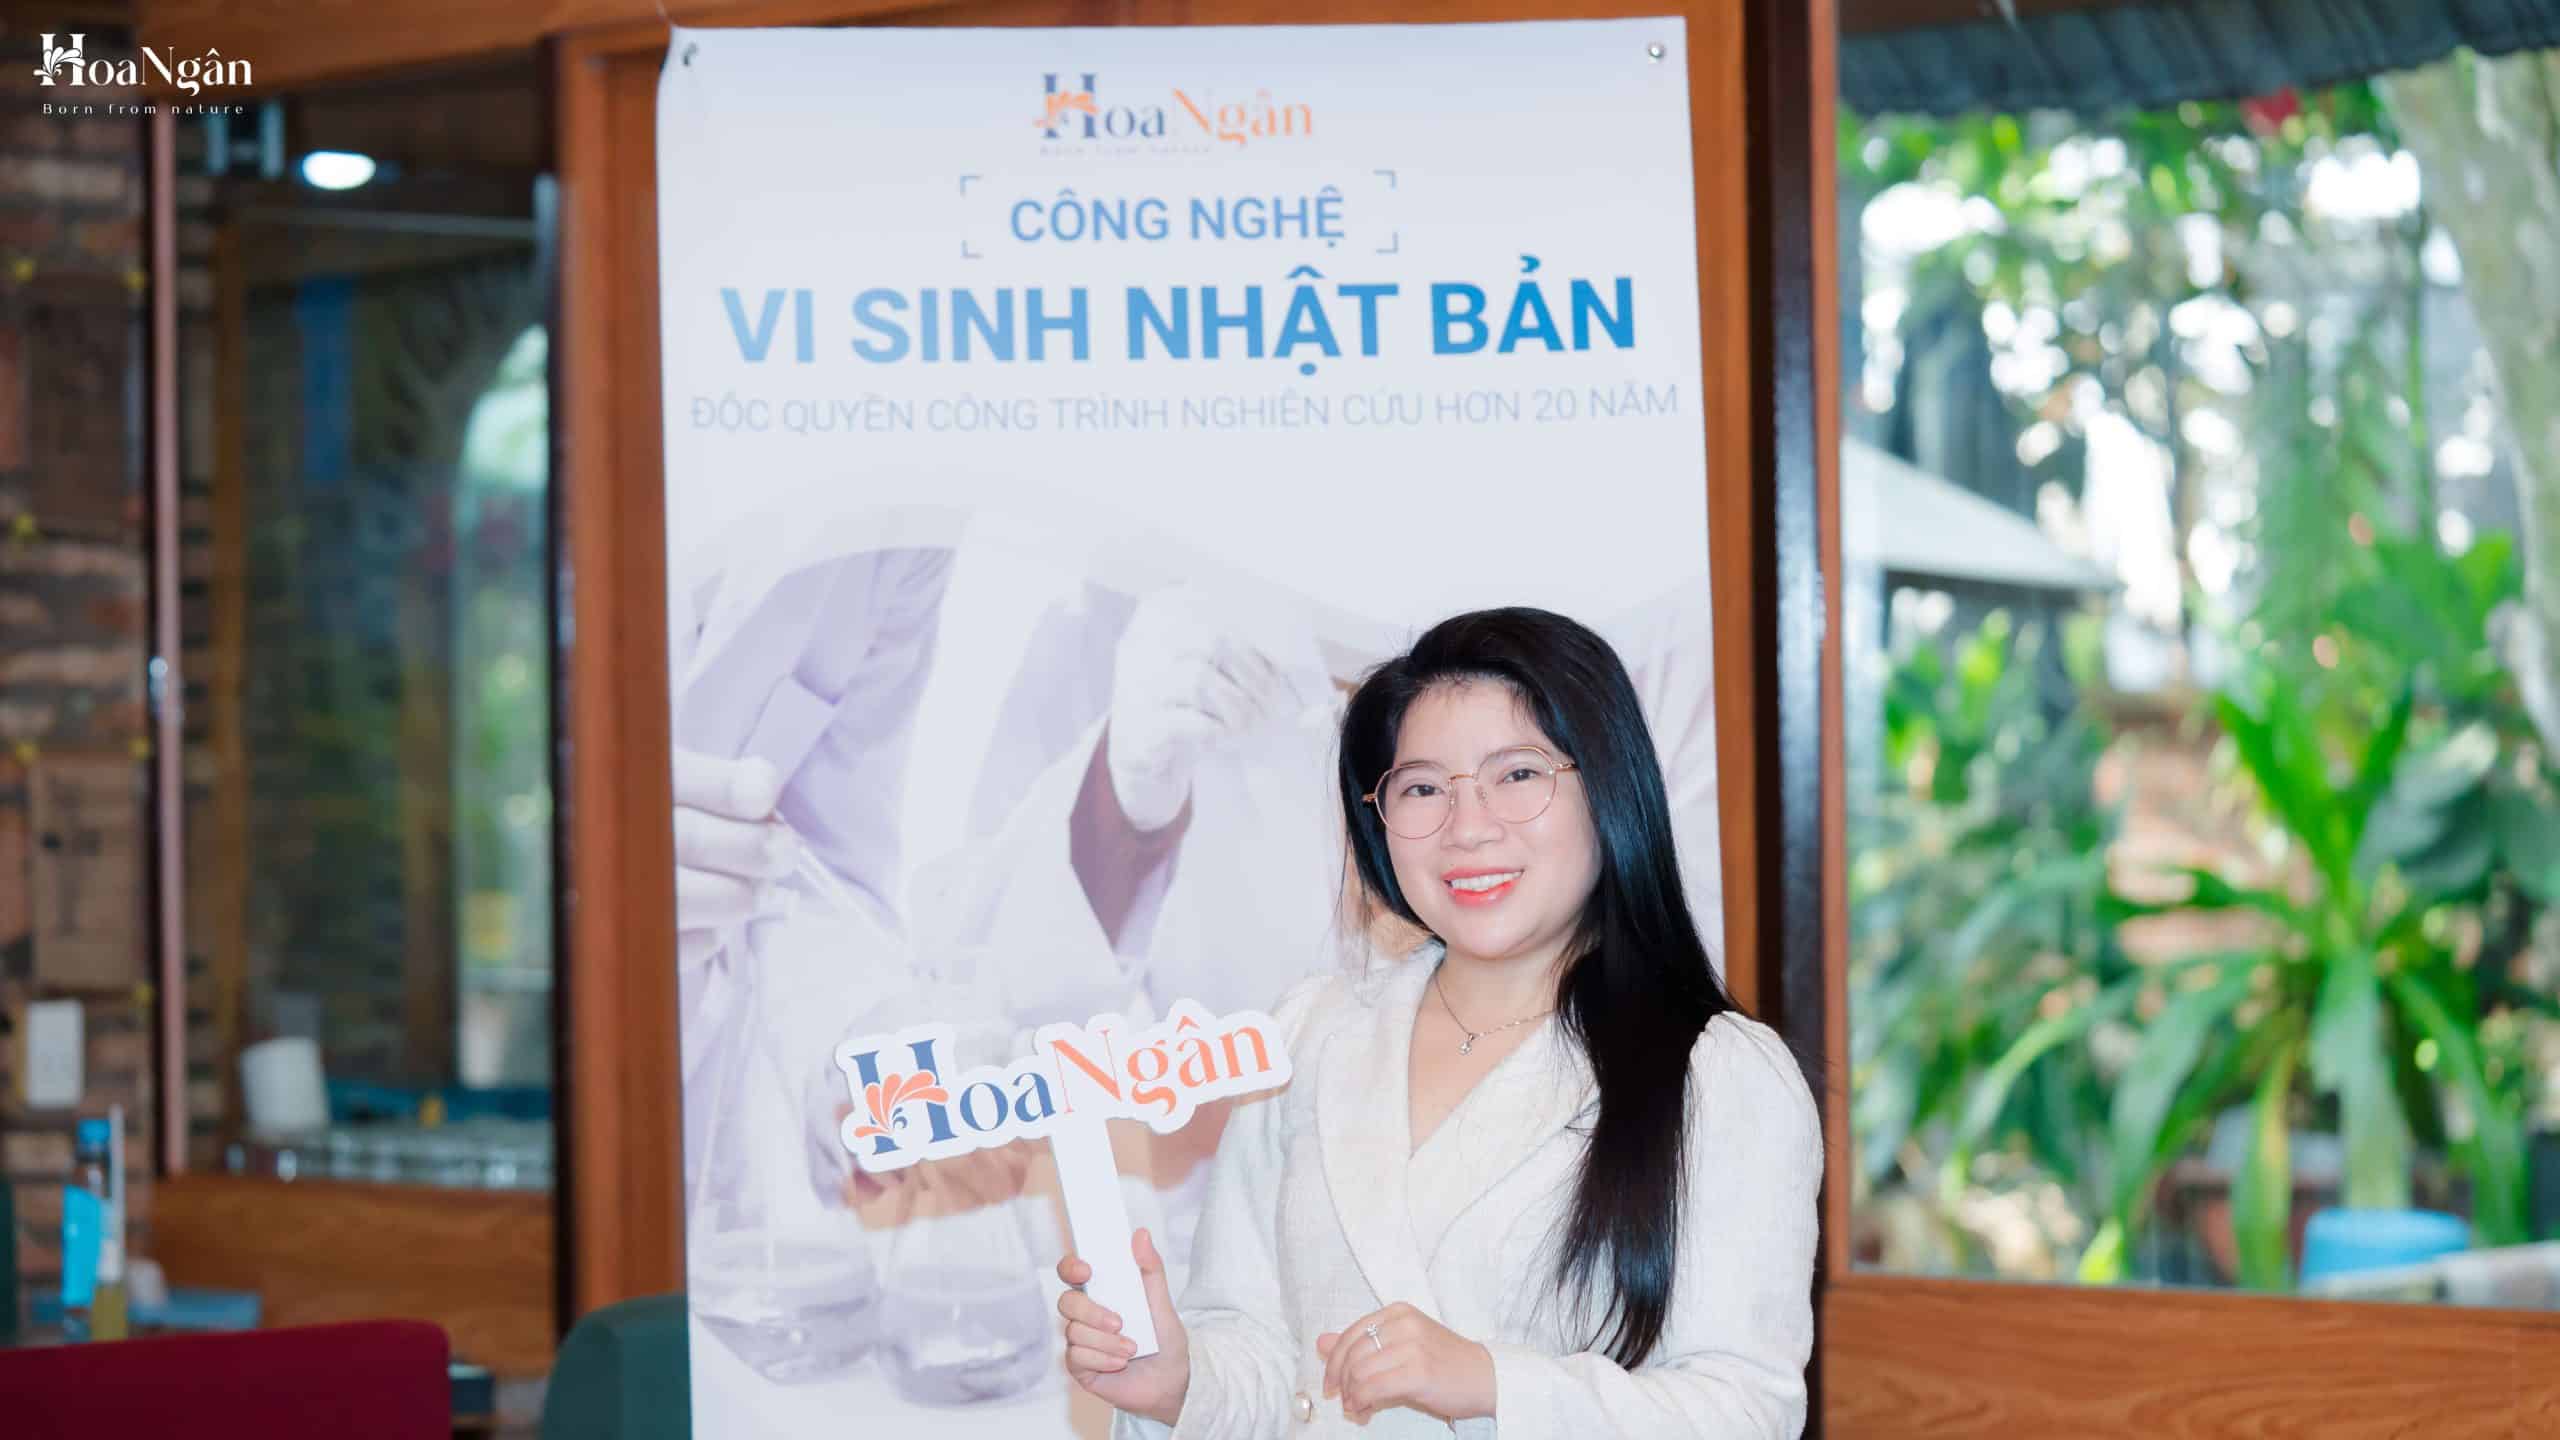 "Sau khóa học thì em sẽ cảm nhận được sâu sắc ngành Mỹ phẩm Việt Nam hiện tại và Công nghệ Vi sinh trong Mỹ phẩm giúp mang lại lợi ích gì cho làn da của phụ nữ nói riêng và cho làn da của người Việt nói chung." - Chị Thảo - Đại diện Viện Thẩm Mỹ Kiều Mi (Gò Vấp)